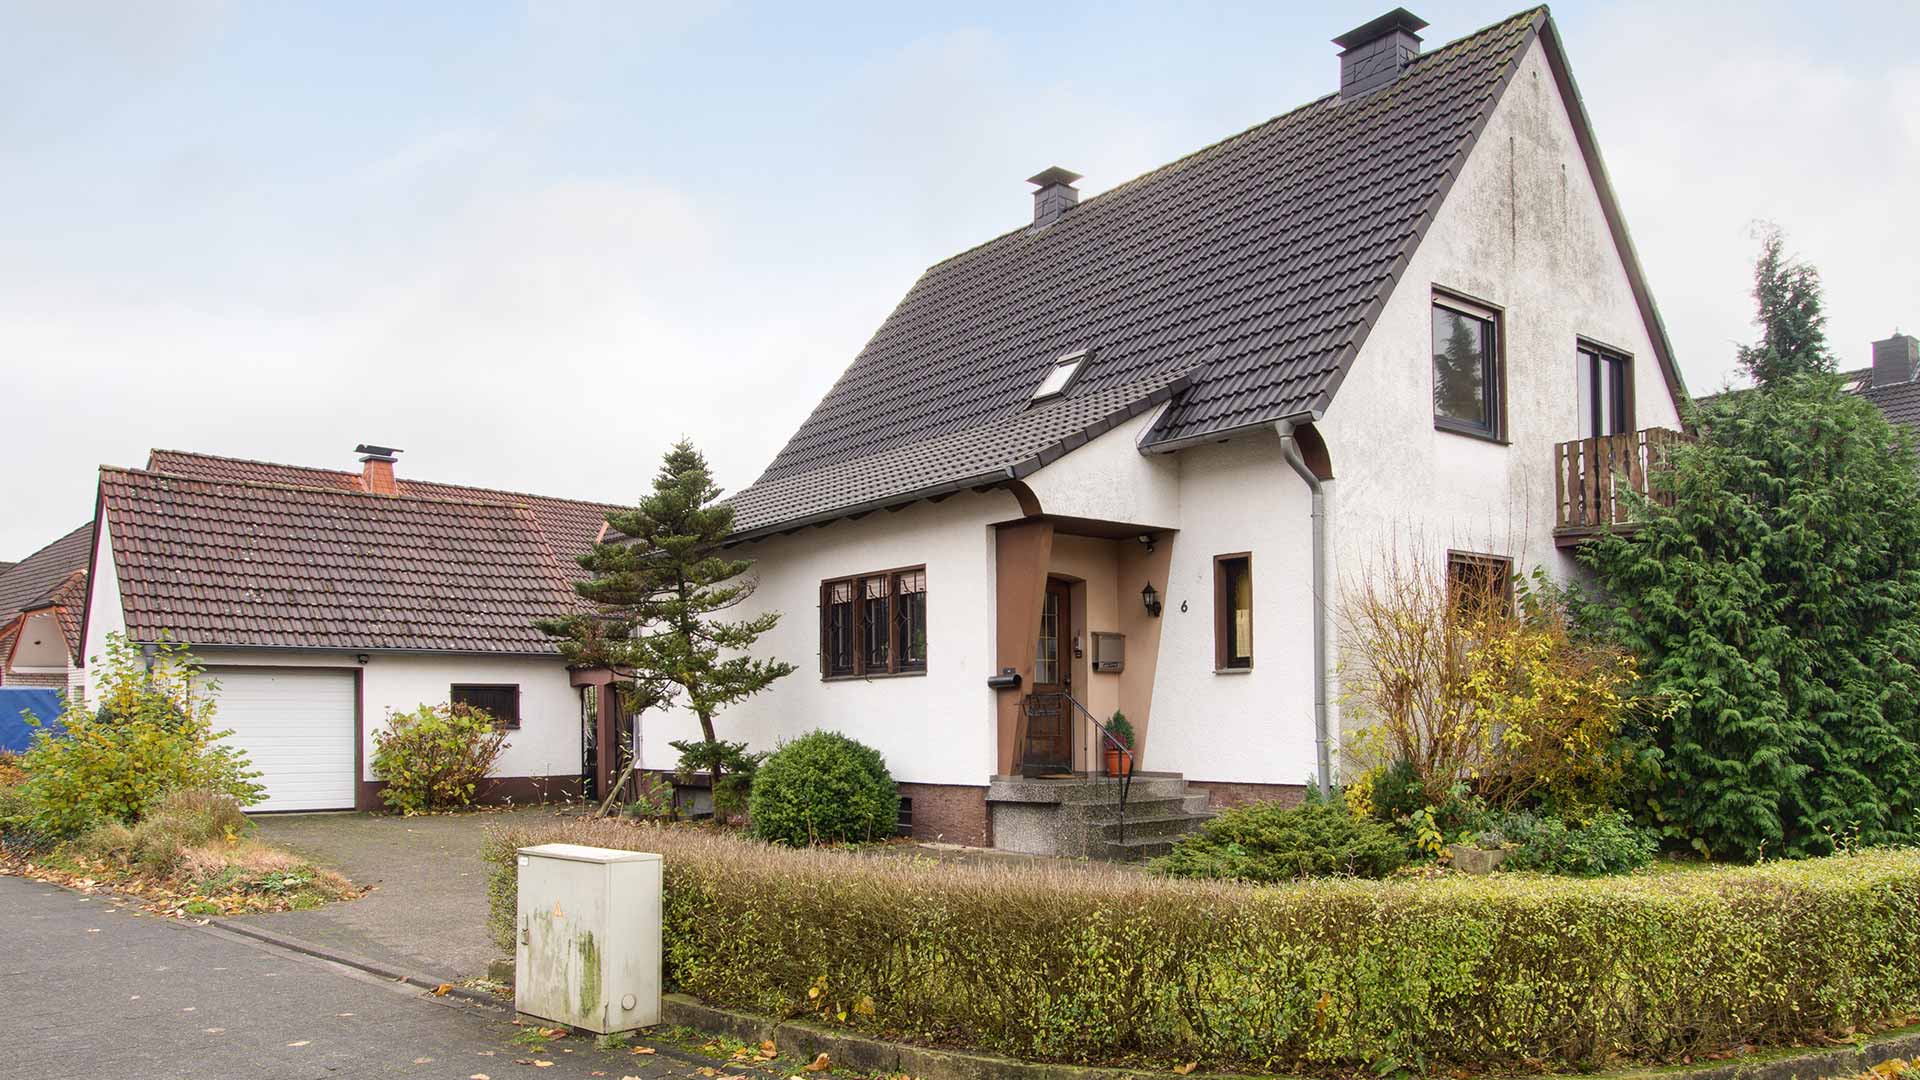 thater IMMOBILIEN GmbH - Immobilienangebot - 33161 Hövelhof - Hövelhof Stadt - Einfamilienhaus - 5437 | Einfamilienhaus in Hövelhof